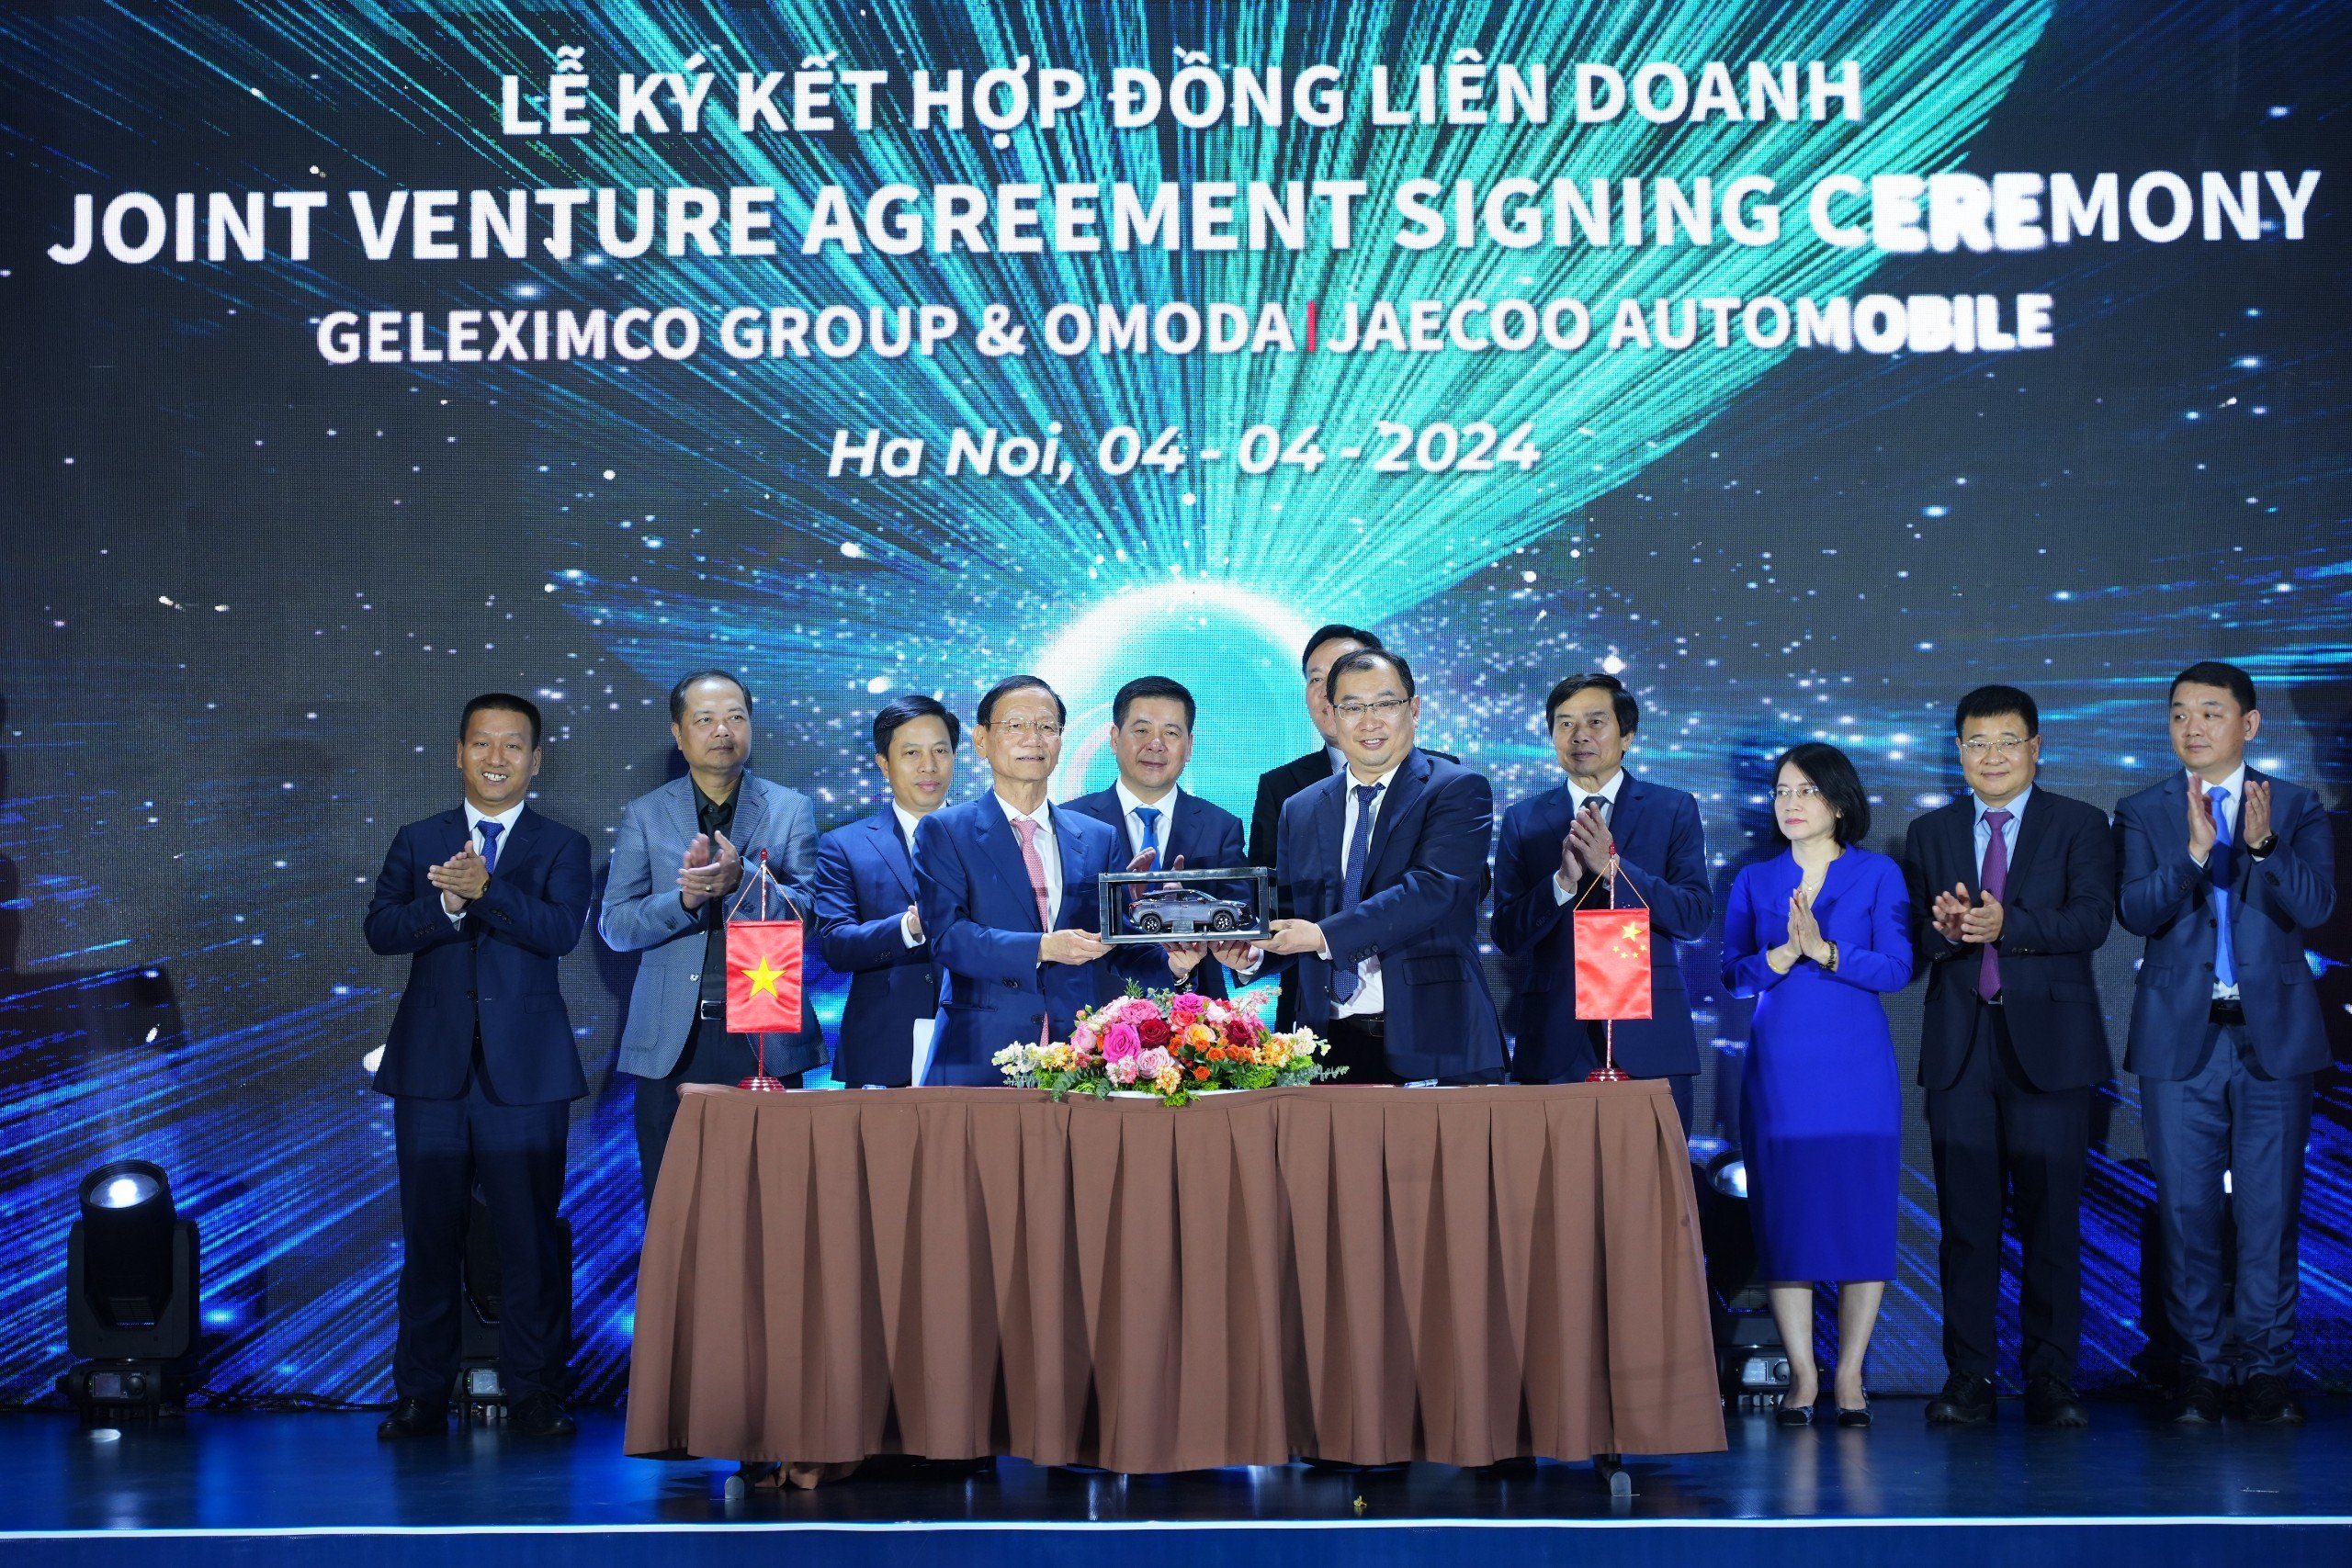  Liên doanh Geleximcon và Omoda & Jaecoo đầu tư nhà máy sản xuất ô tô tại Việt Nam